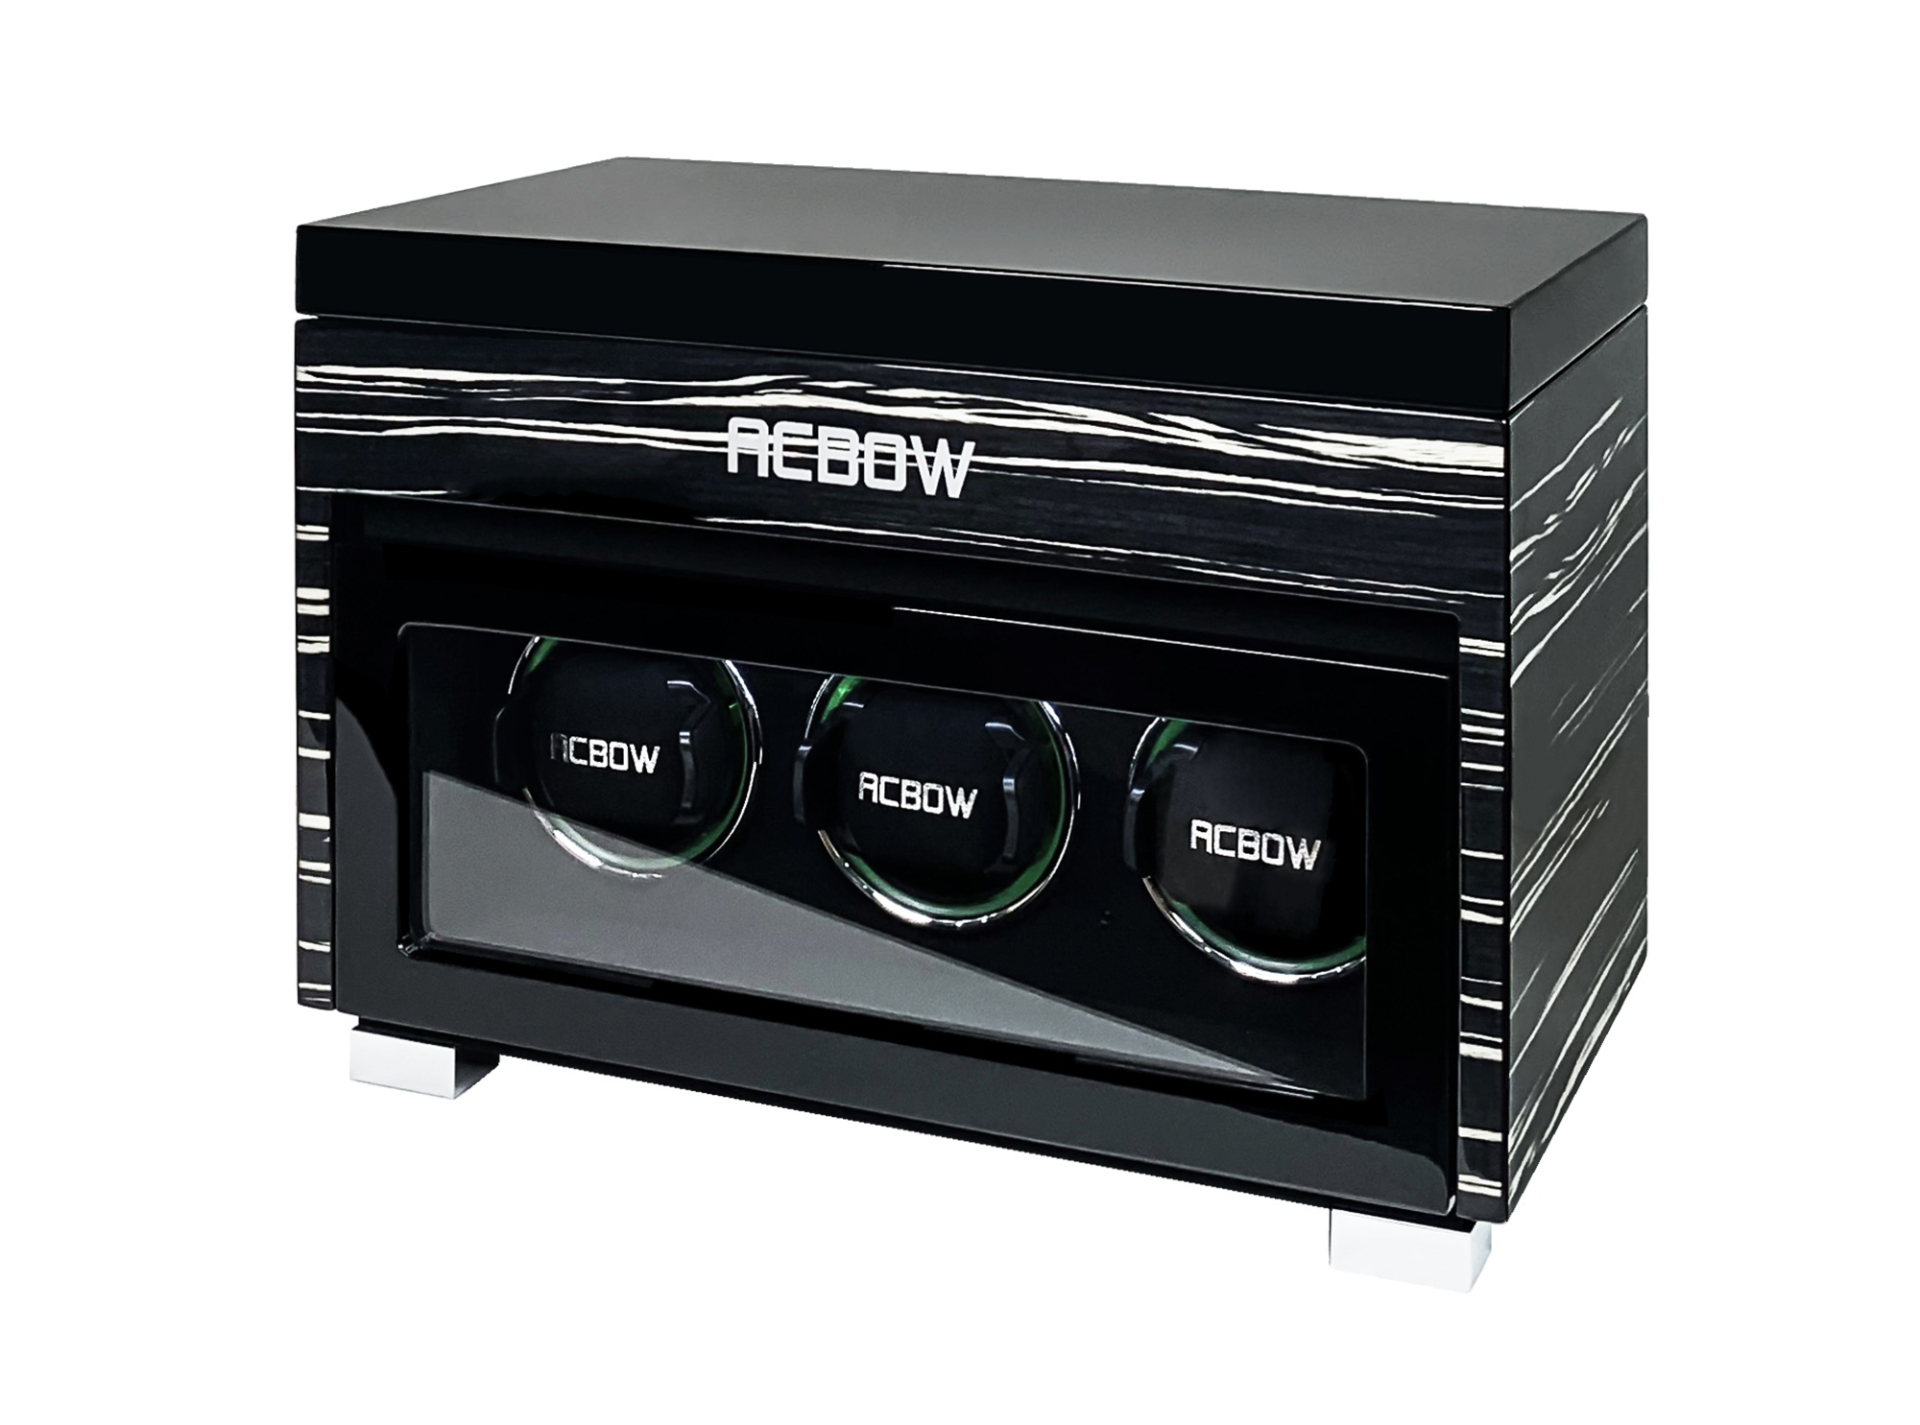 Tủ đựng đồng hồ cơ ACBOW cao cấp - 3 xoay 6 tĩnh - kèm remote, màn hình cảm ứng và LED - vỏ gỗ màu granite sáng bóng